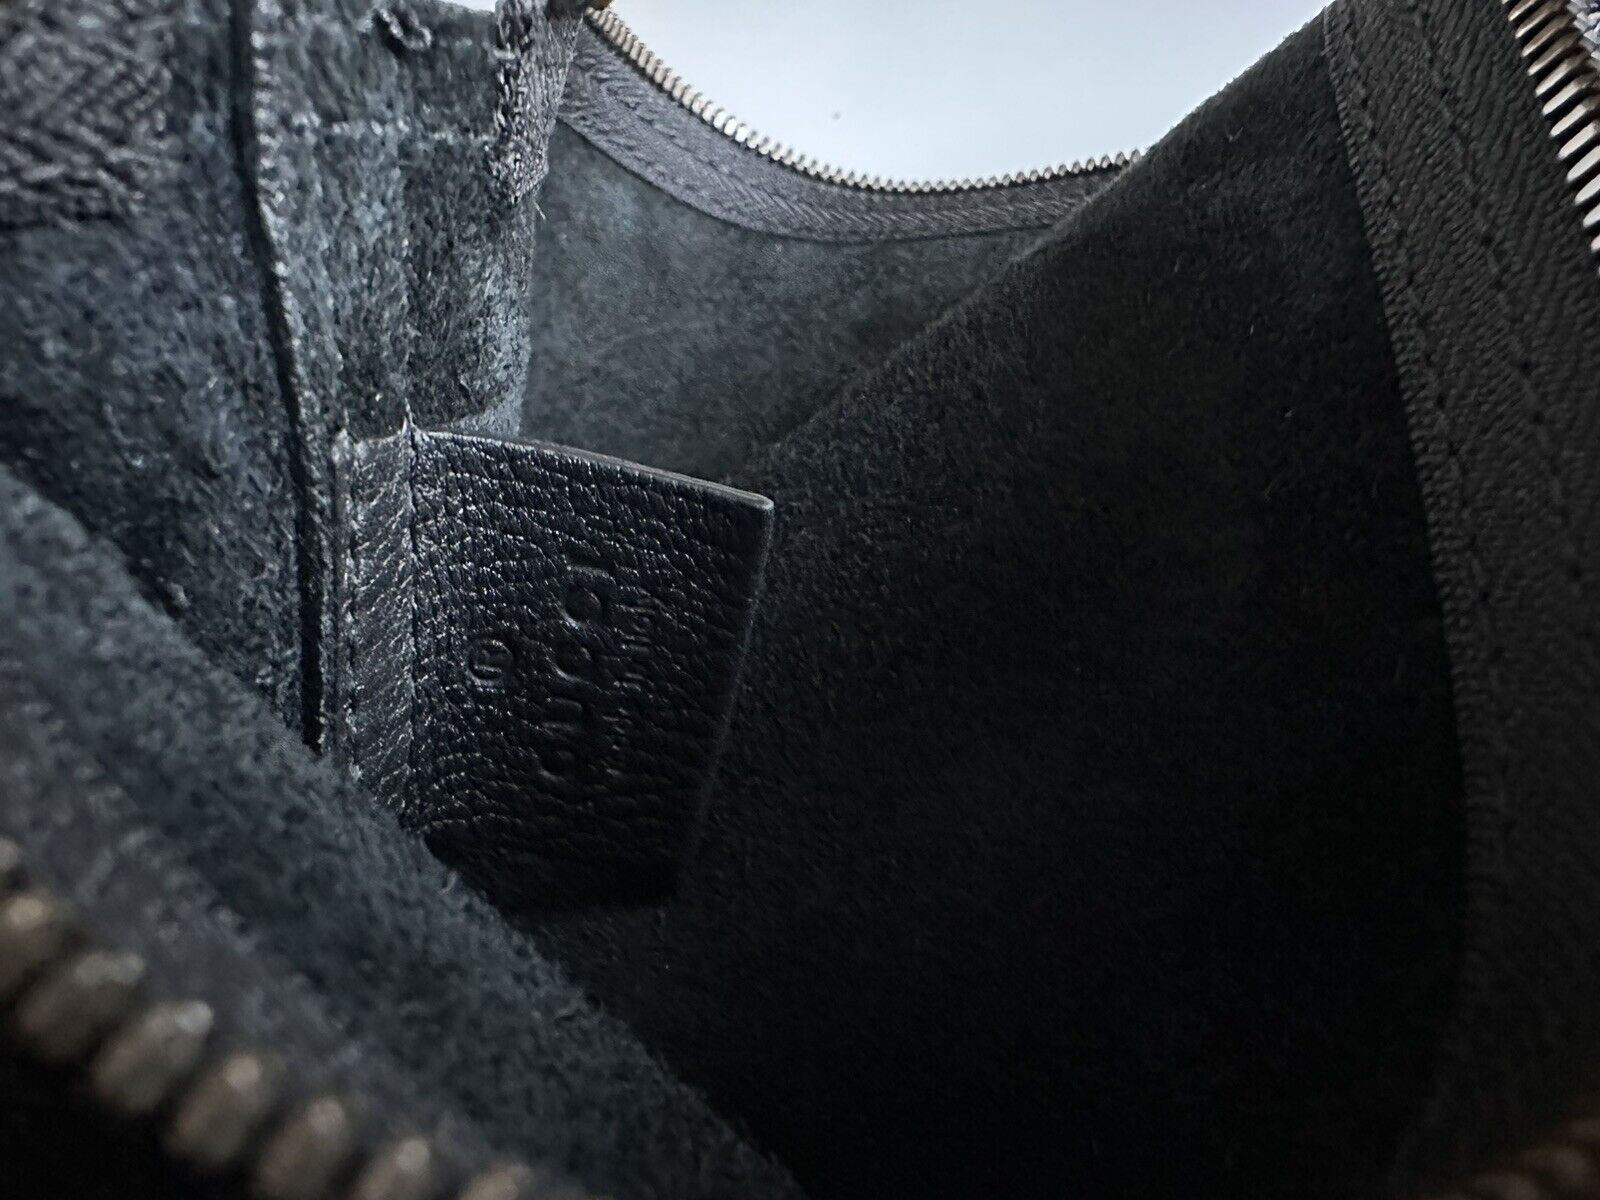 Новый черный клатч Gucci G Web Gucci с принтом на молнии вокруг, сделано в Италии 